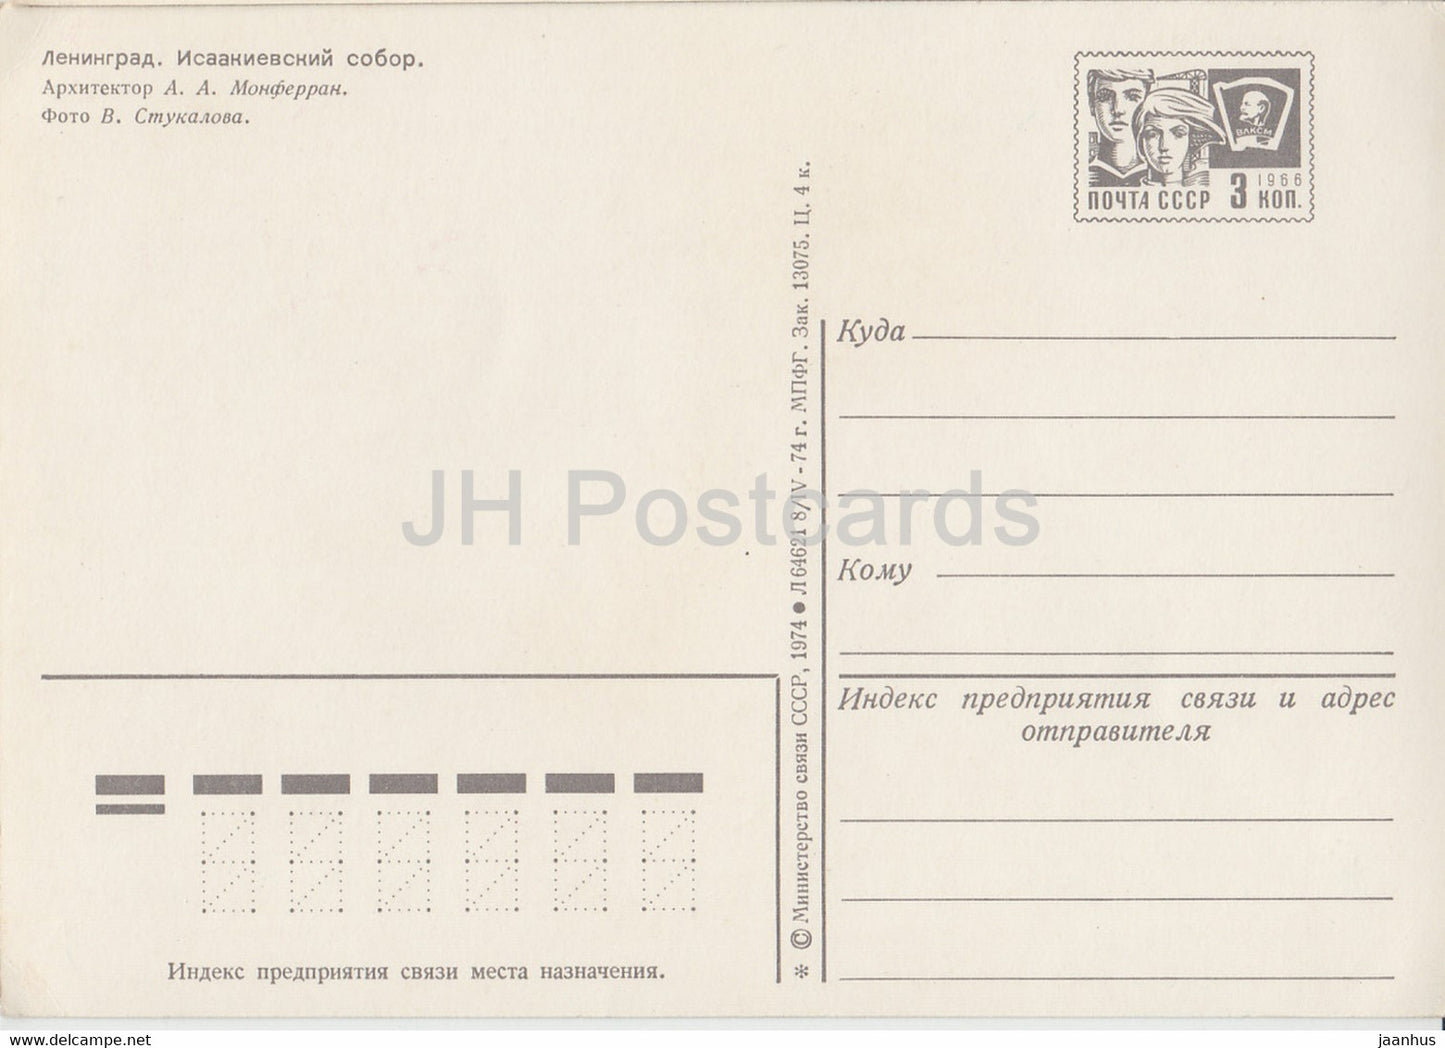 Leningrad - St. Petersburg - Isaakskathedrale - Ganzsache - 1974 - Russland UdSSR - unbenutzt